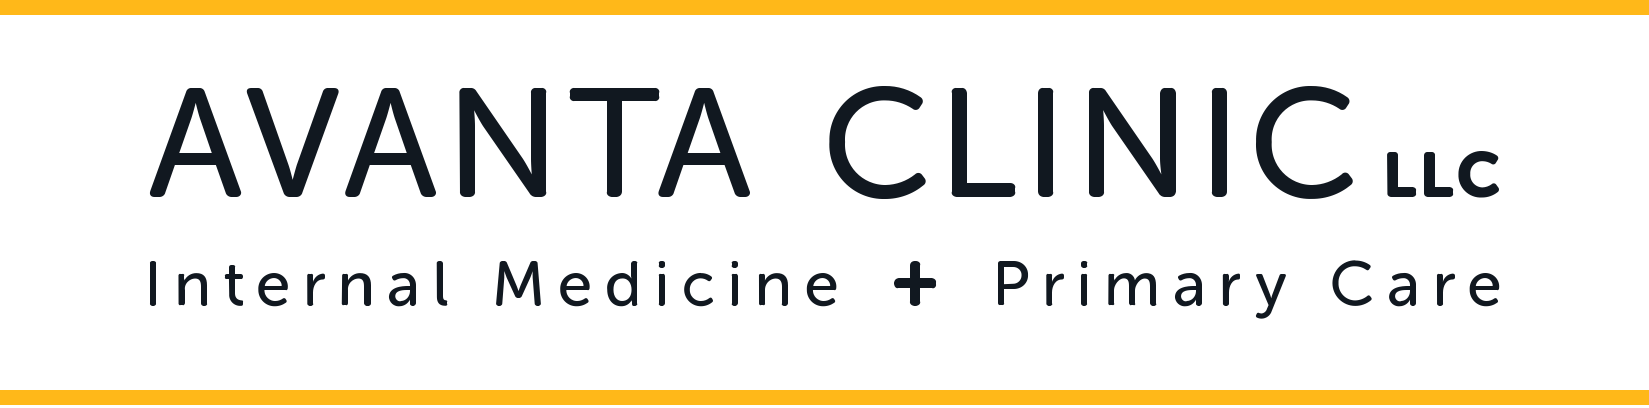 Avanta Clinic LLC